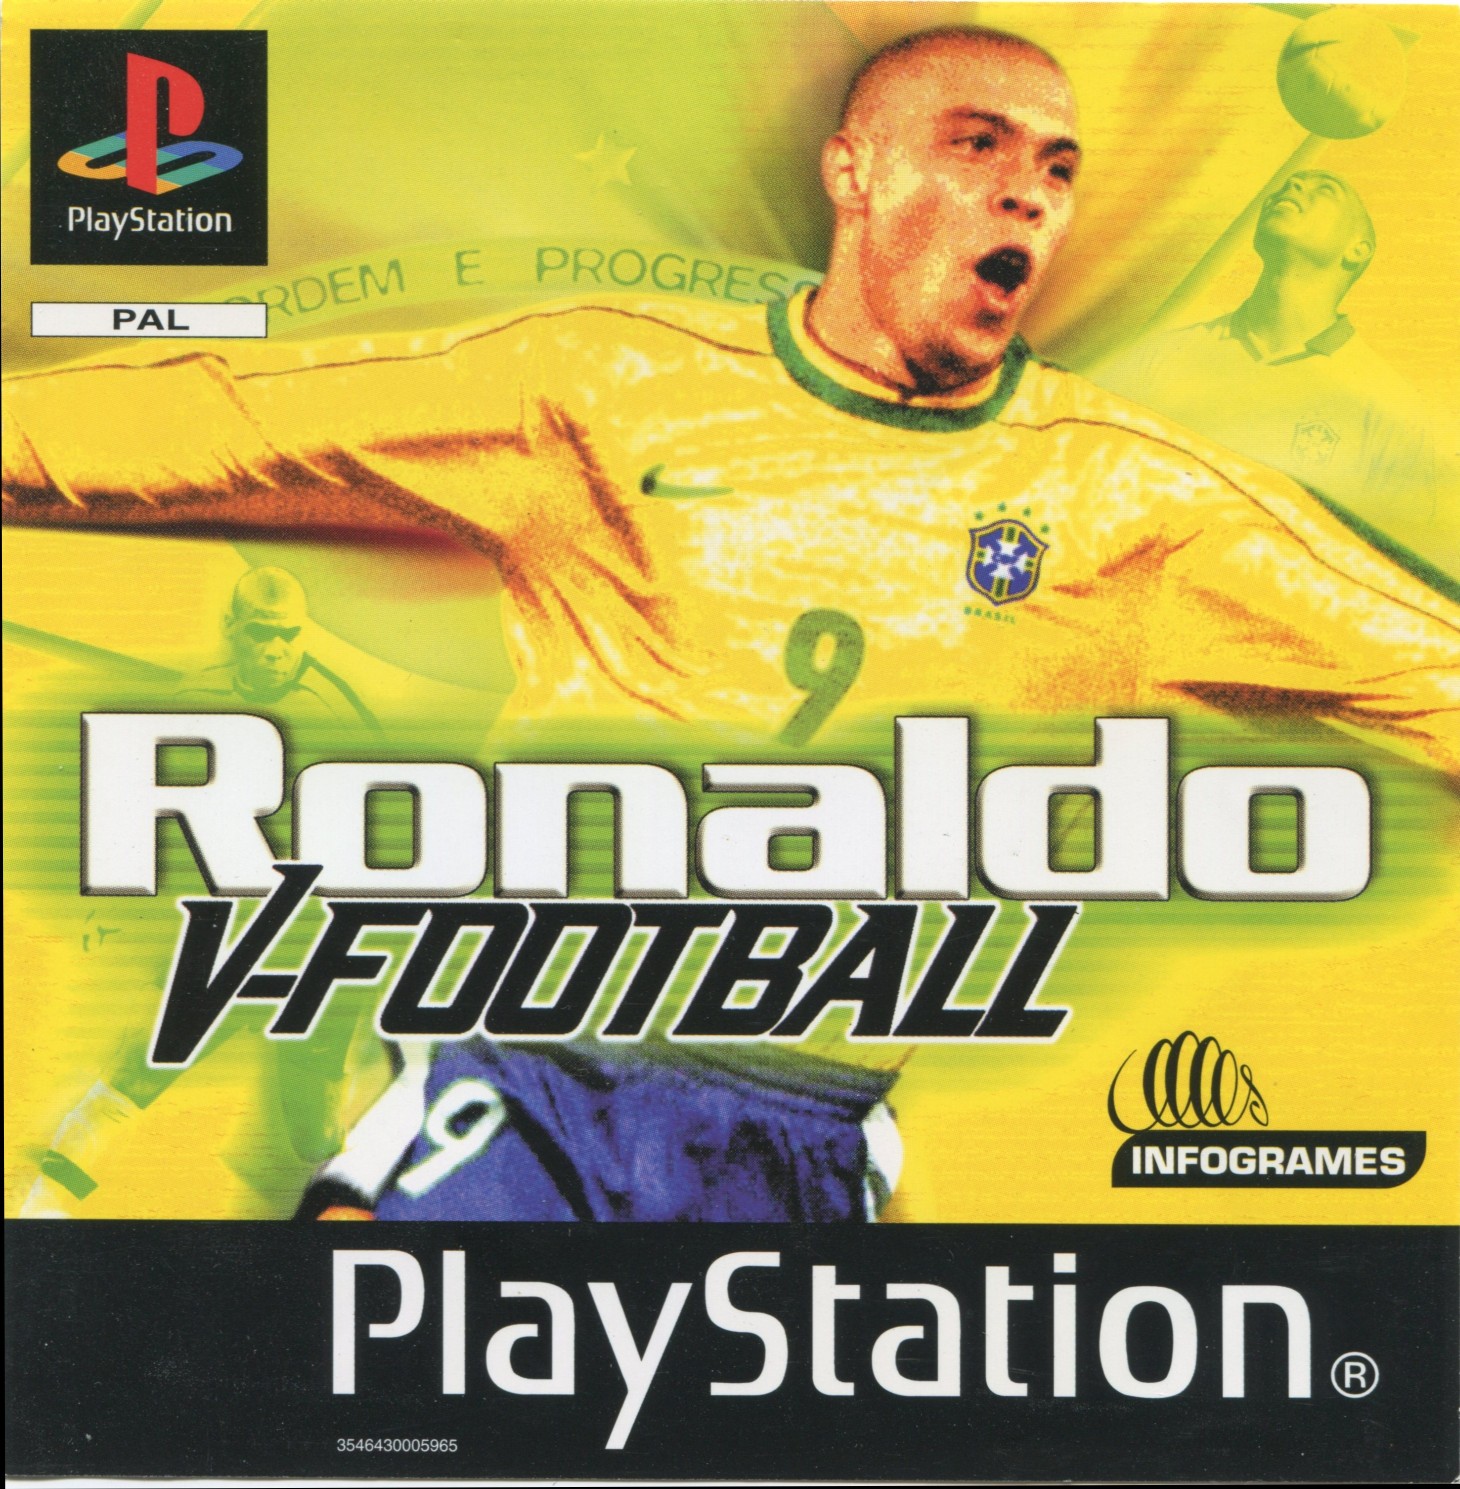 Ronaldo V-Football PSX cover